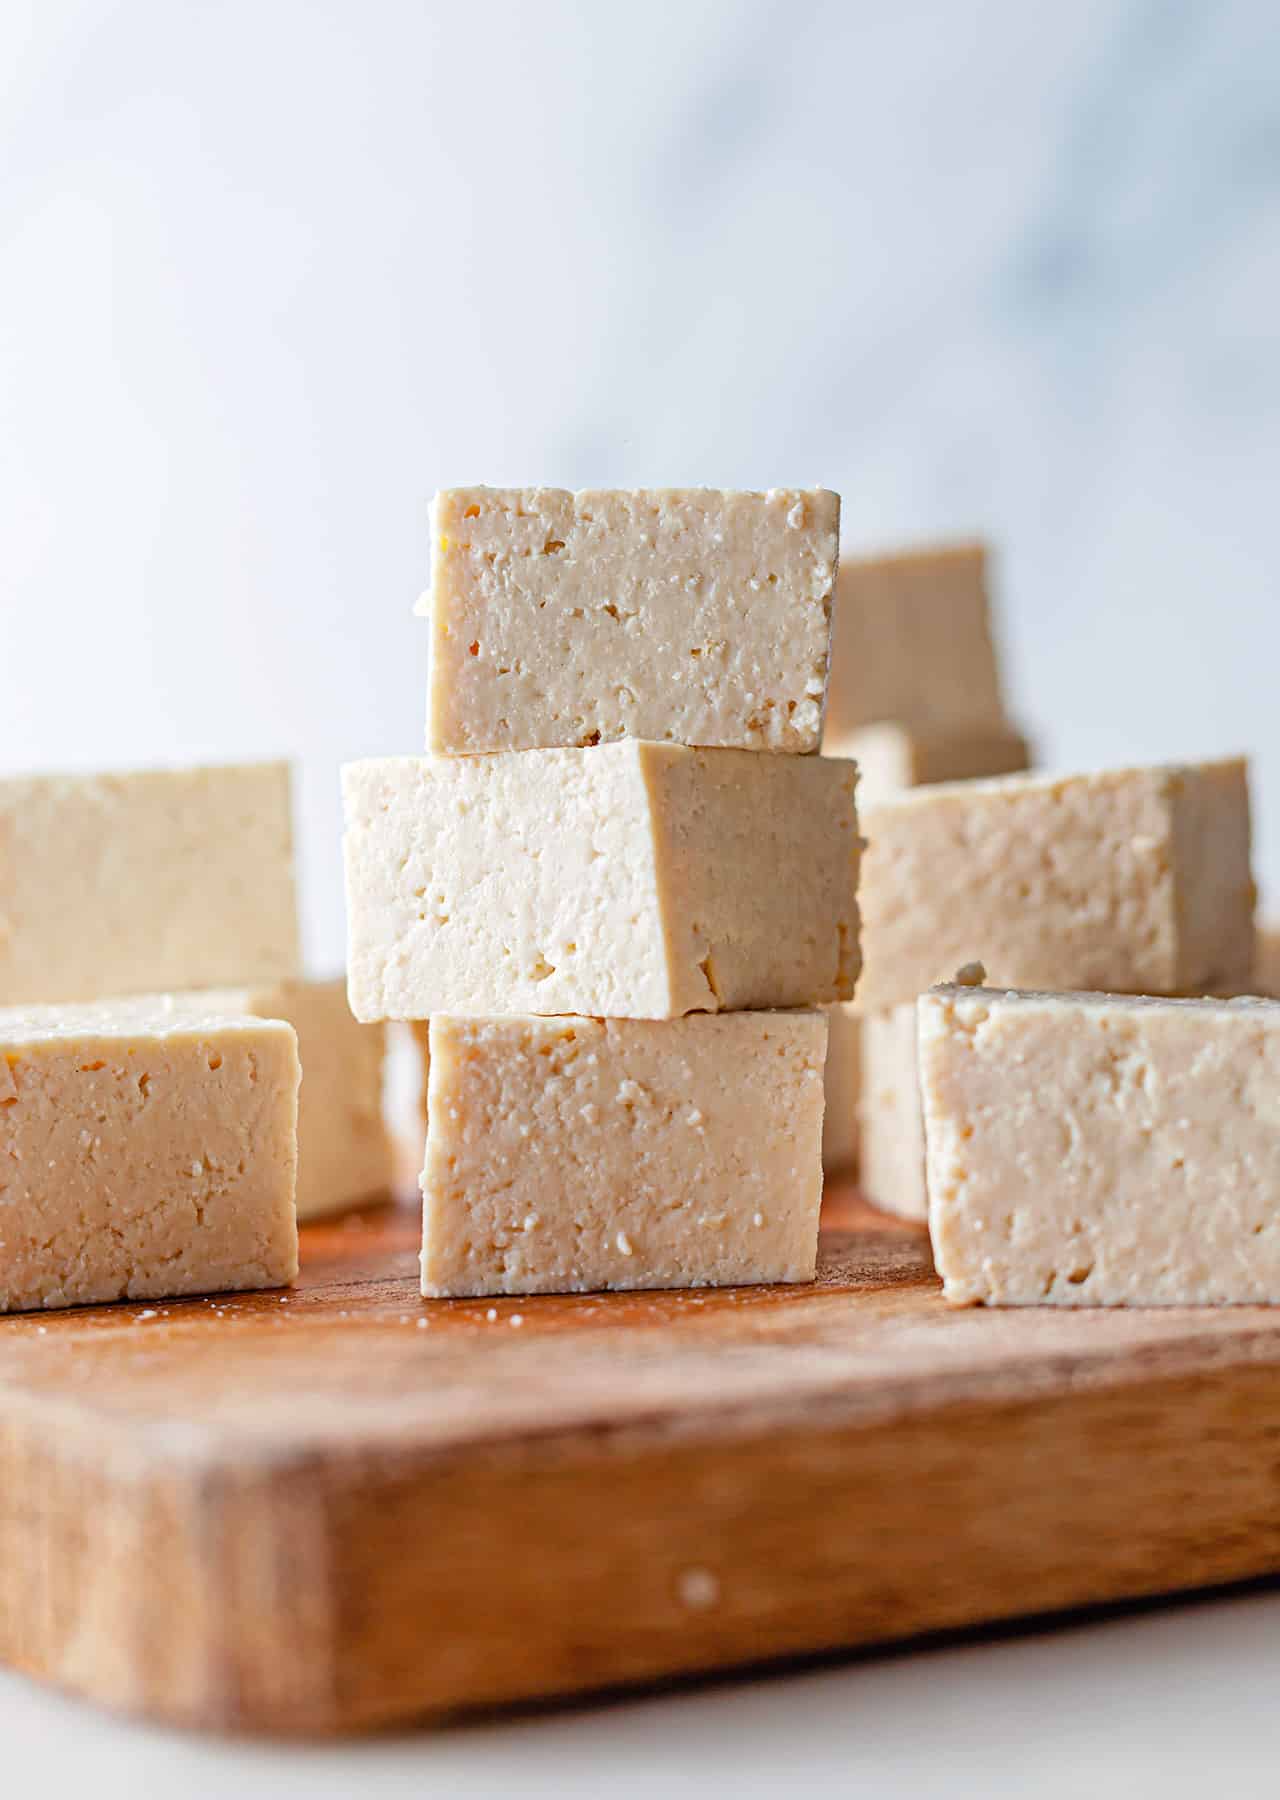 How To Make Homemade Tofu